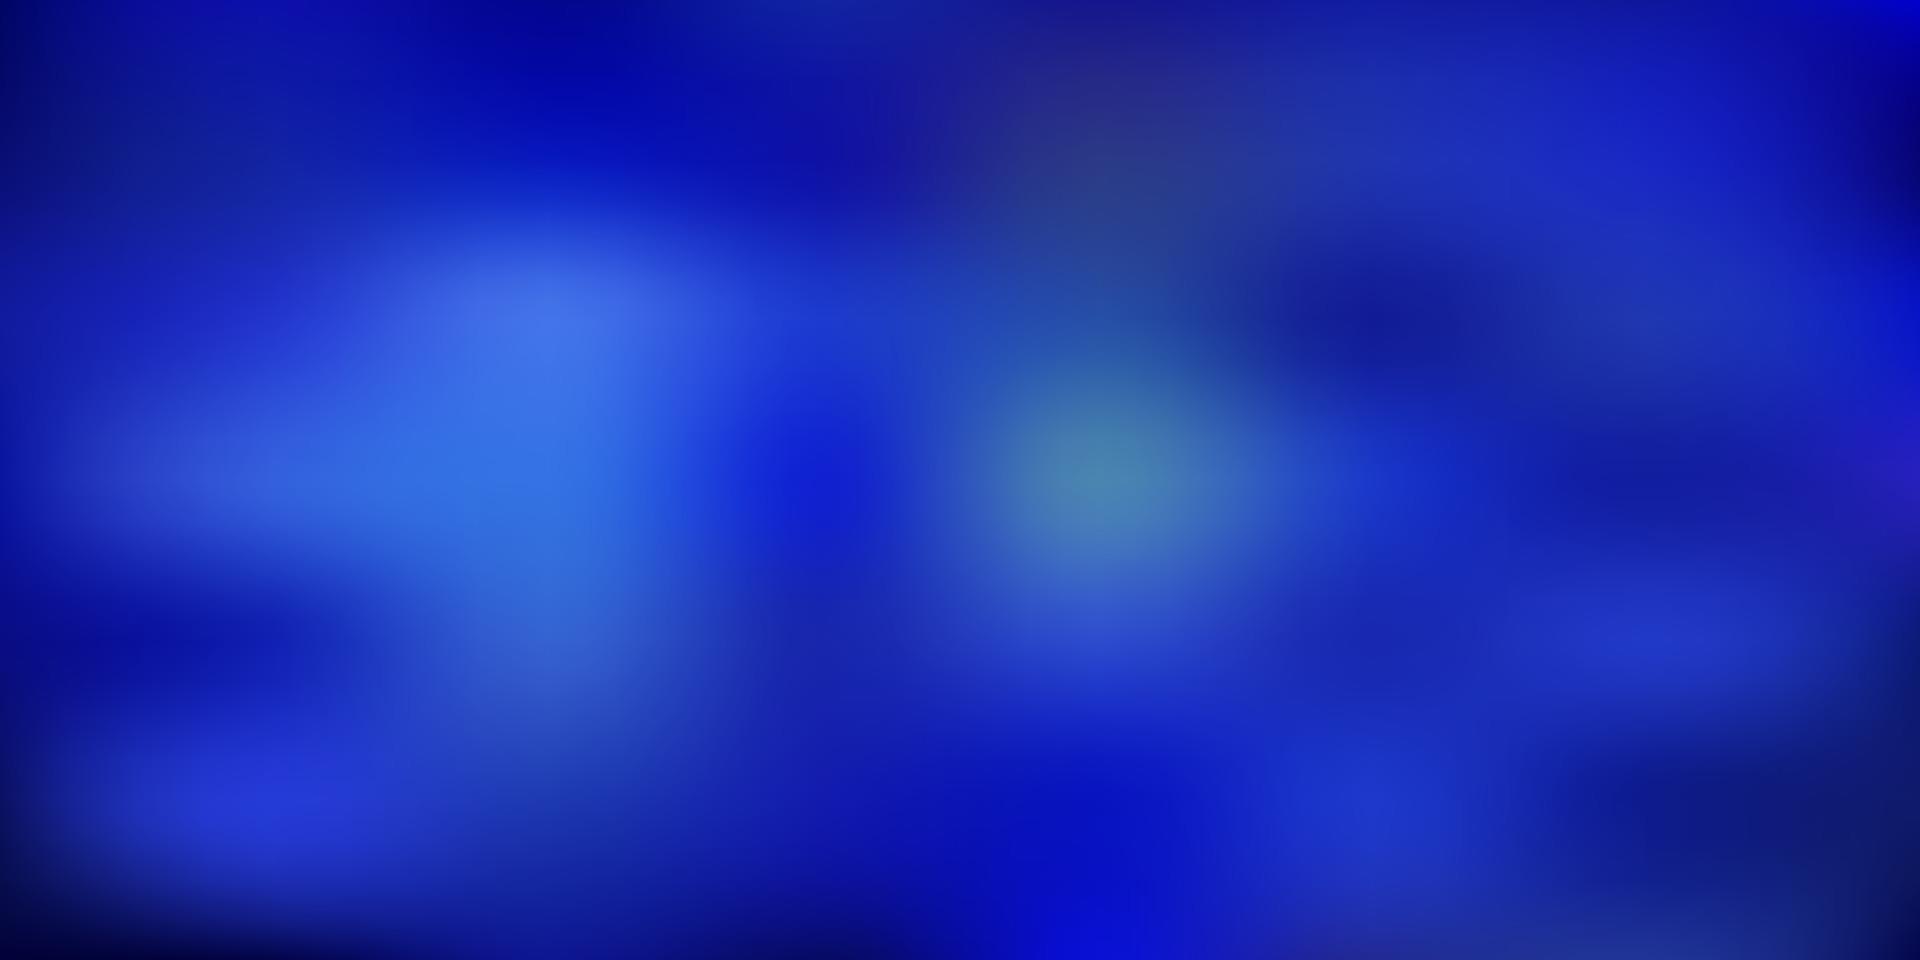 Dark pink, blue vector gradient blur background.